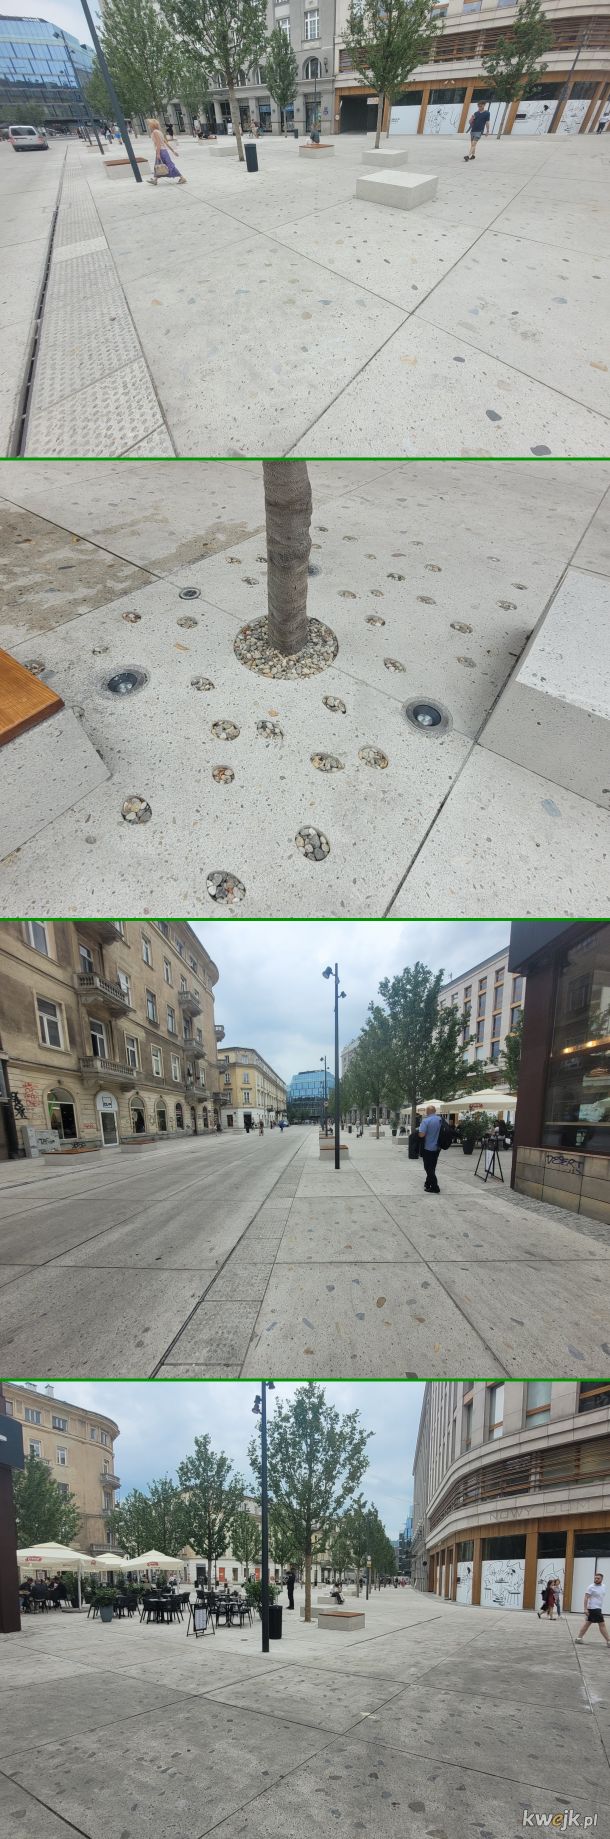 Trzymajmy kciuki za drzewa na Placu Pięciu Rogów w Warszawie. Sama myśl o tym ile to kosztowało (~15mln) może ich nie motywować wystarczająco dla przetrwania.  Przestrzeń "odmieniła się", ale czy na stałe? Wawa wytycza trend "odejścia" od betonozy ;)